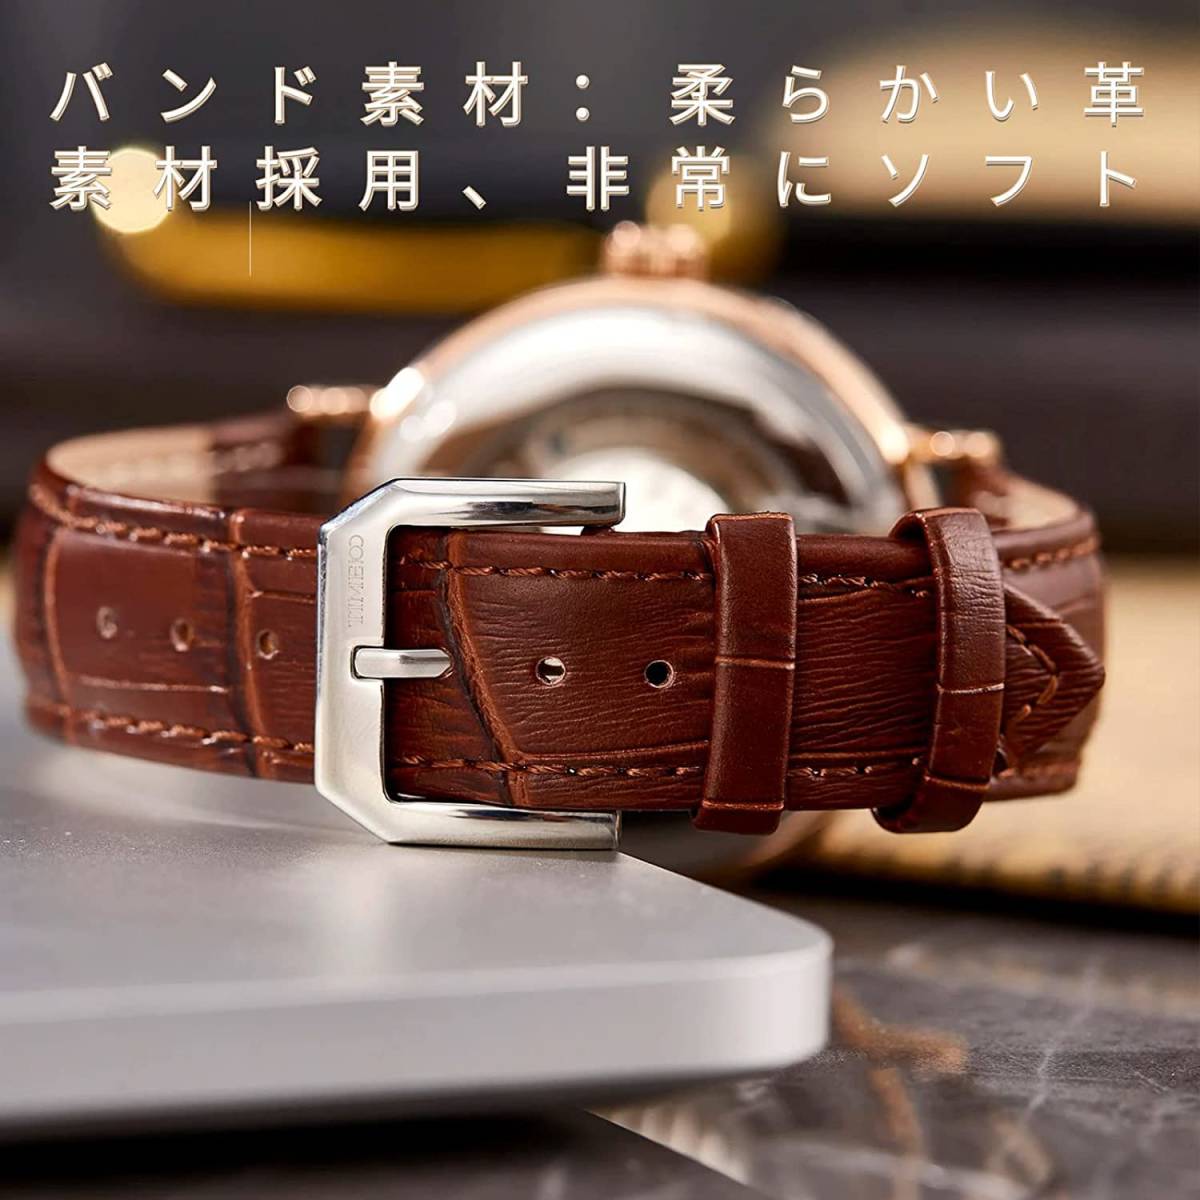 アンティーク調 腕時計 自動巻き スケルトン ブラウン メンズ 高品質 